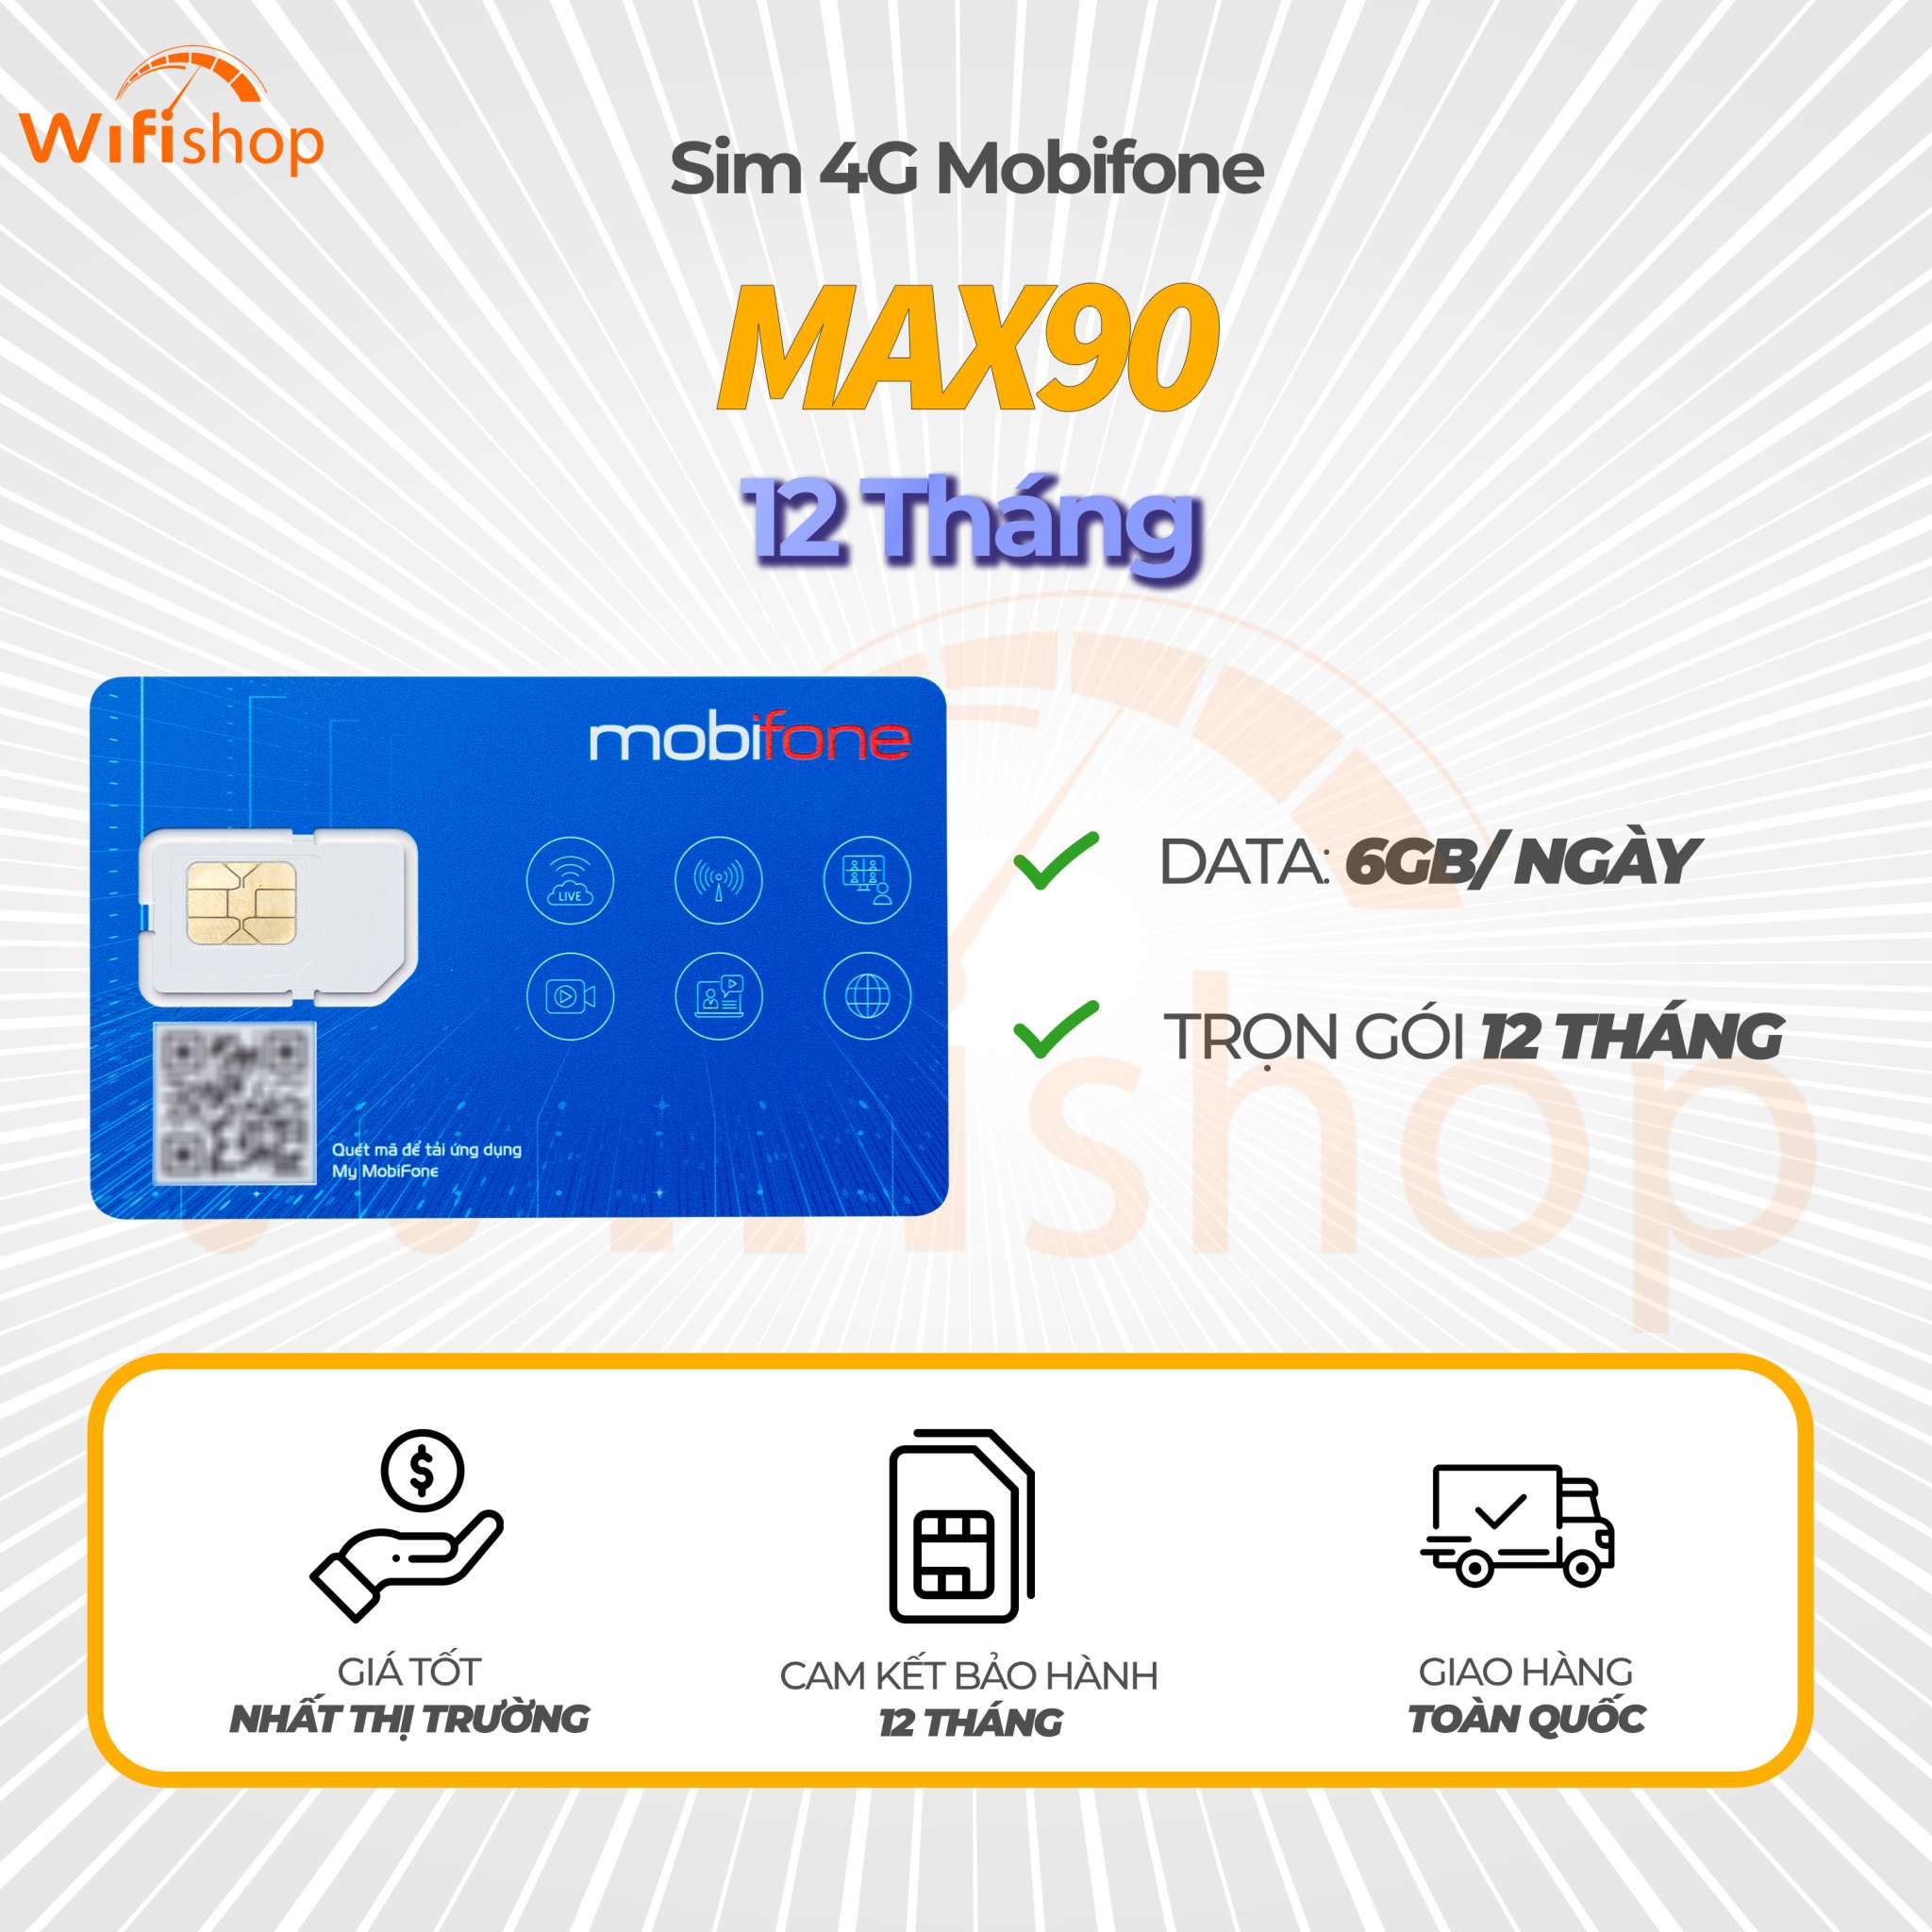 Sim Mobifone 4G MAX90 ưu đãi 6GB/ ngày – truy cập không giới hạn, 12 tháng không nạp tiền